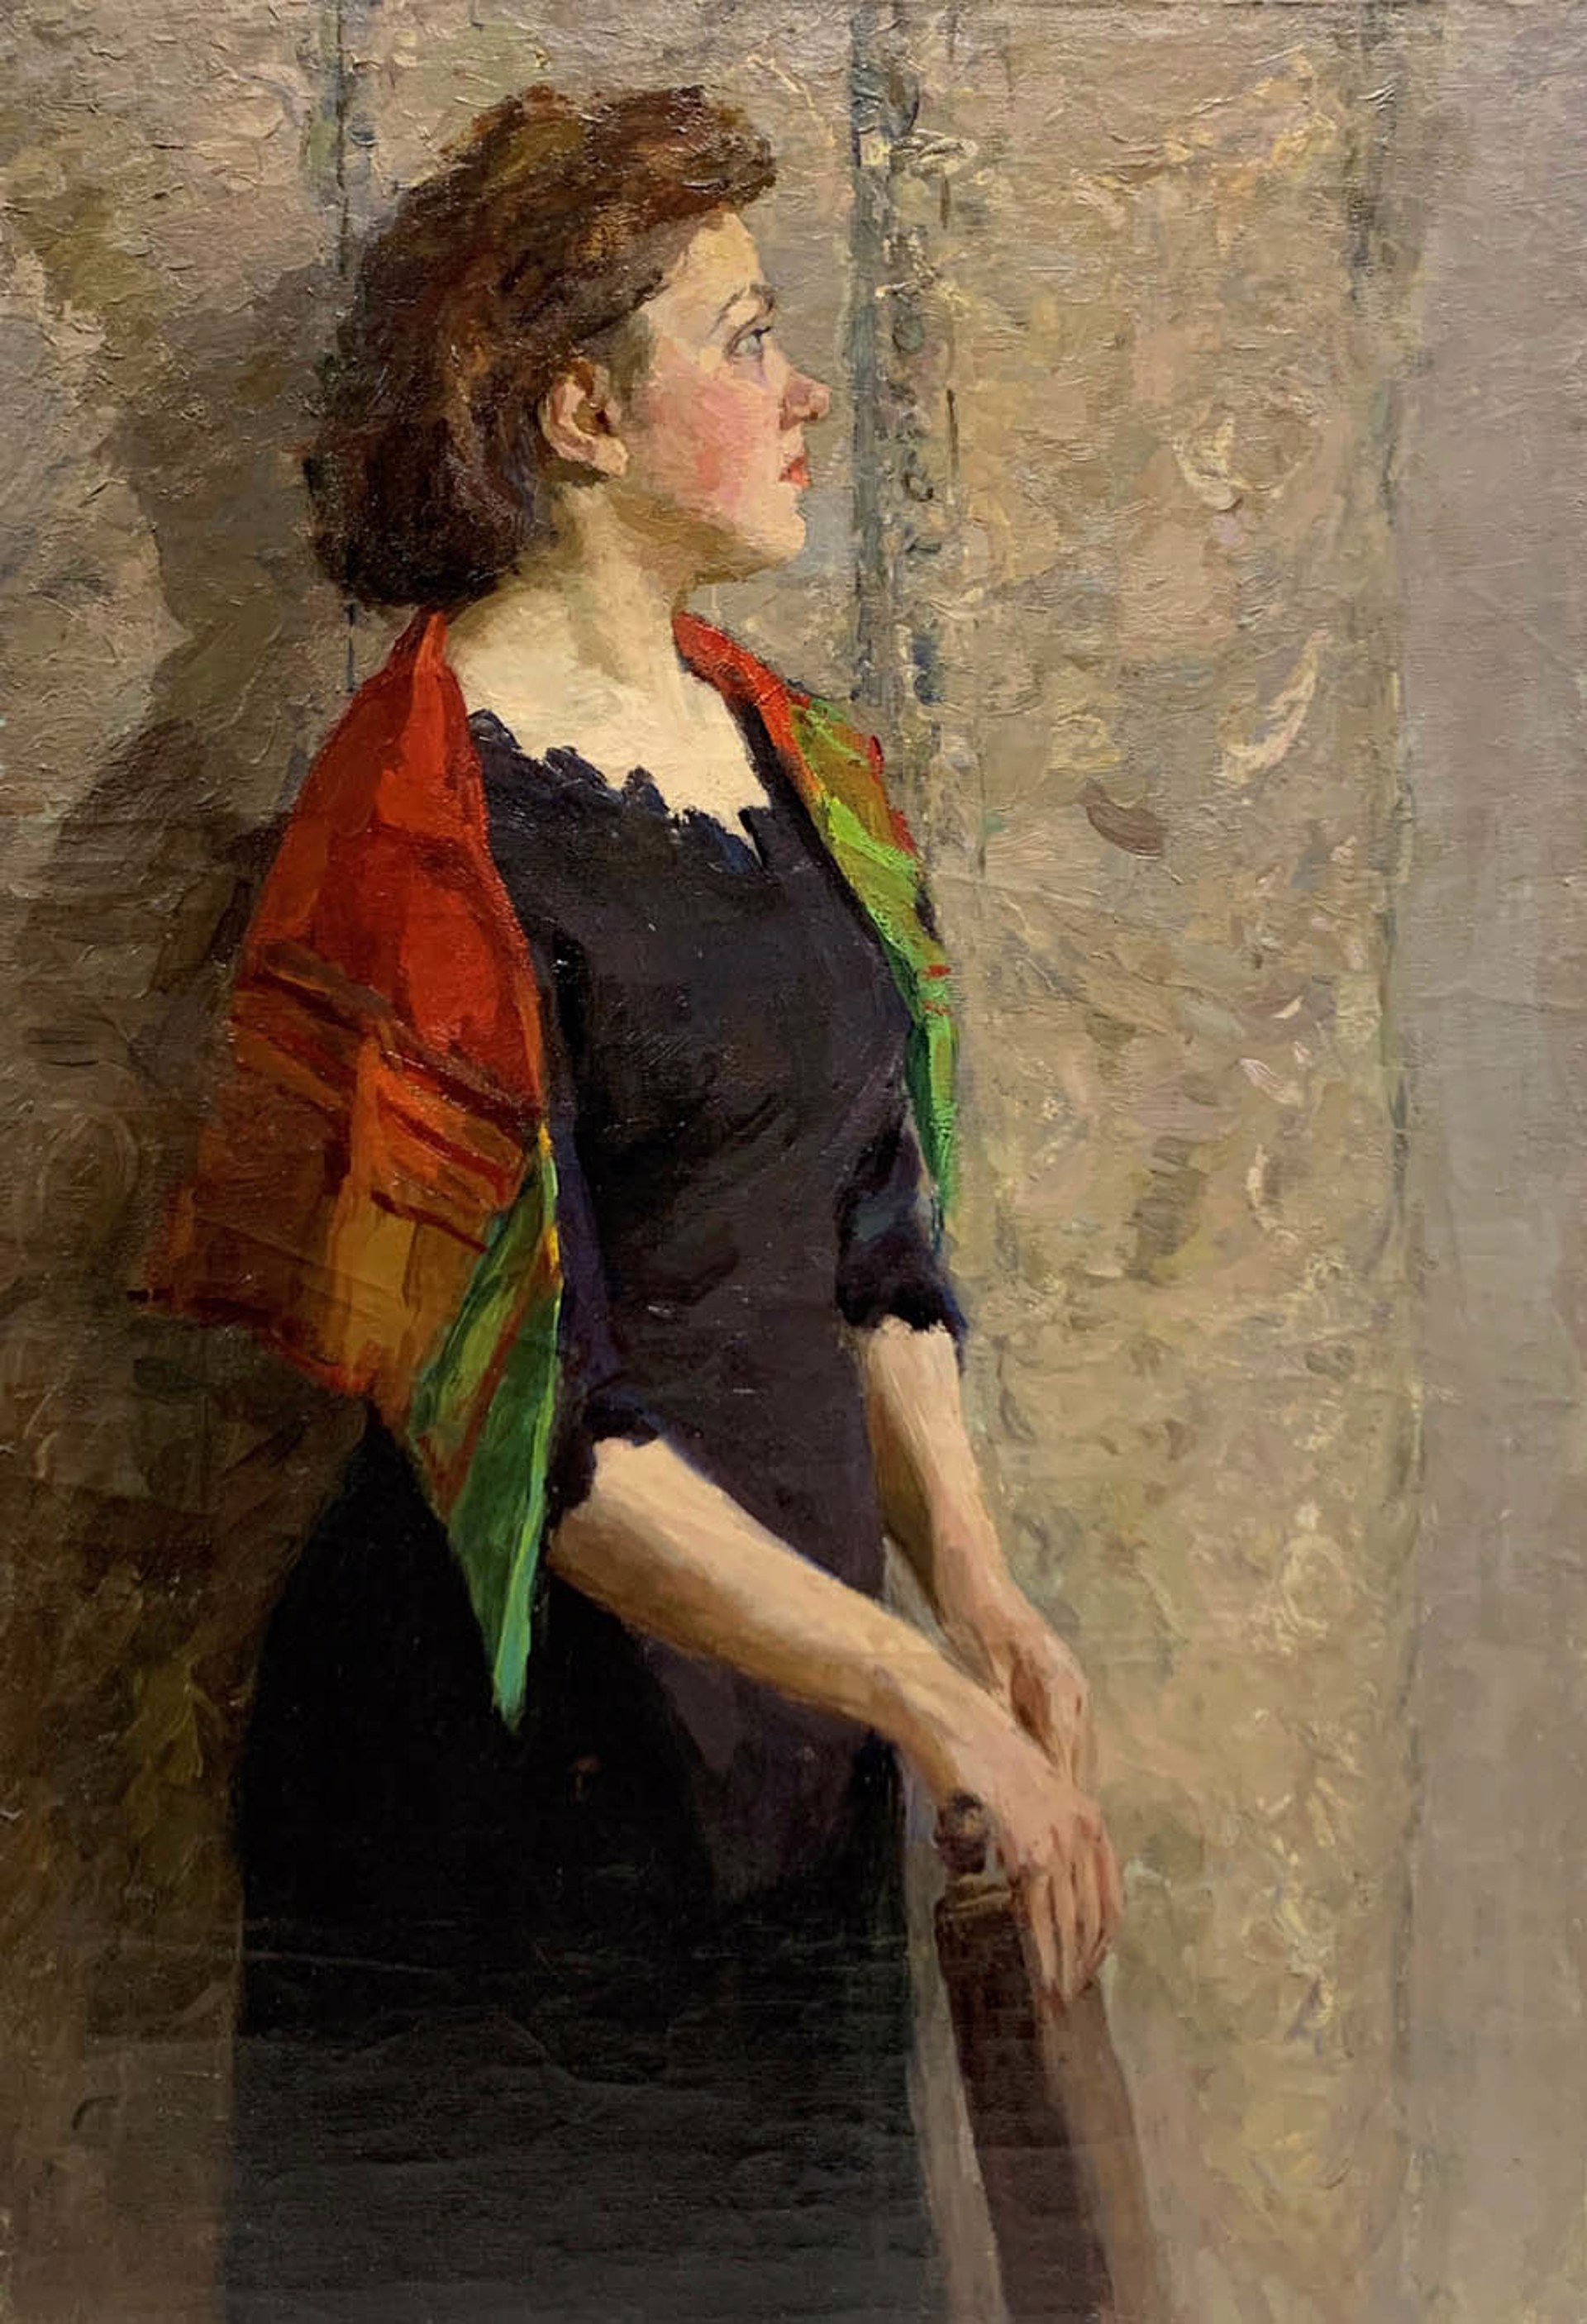 Woman in Shawl by Vladimir A. Zhukov